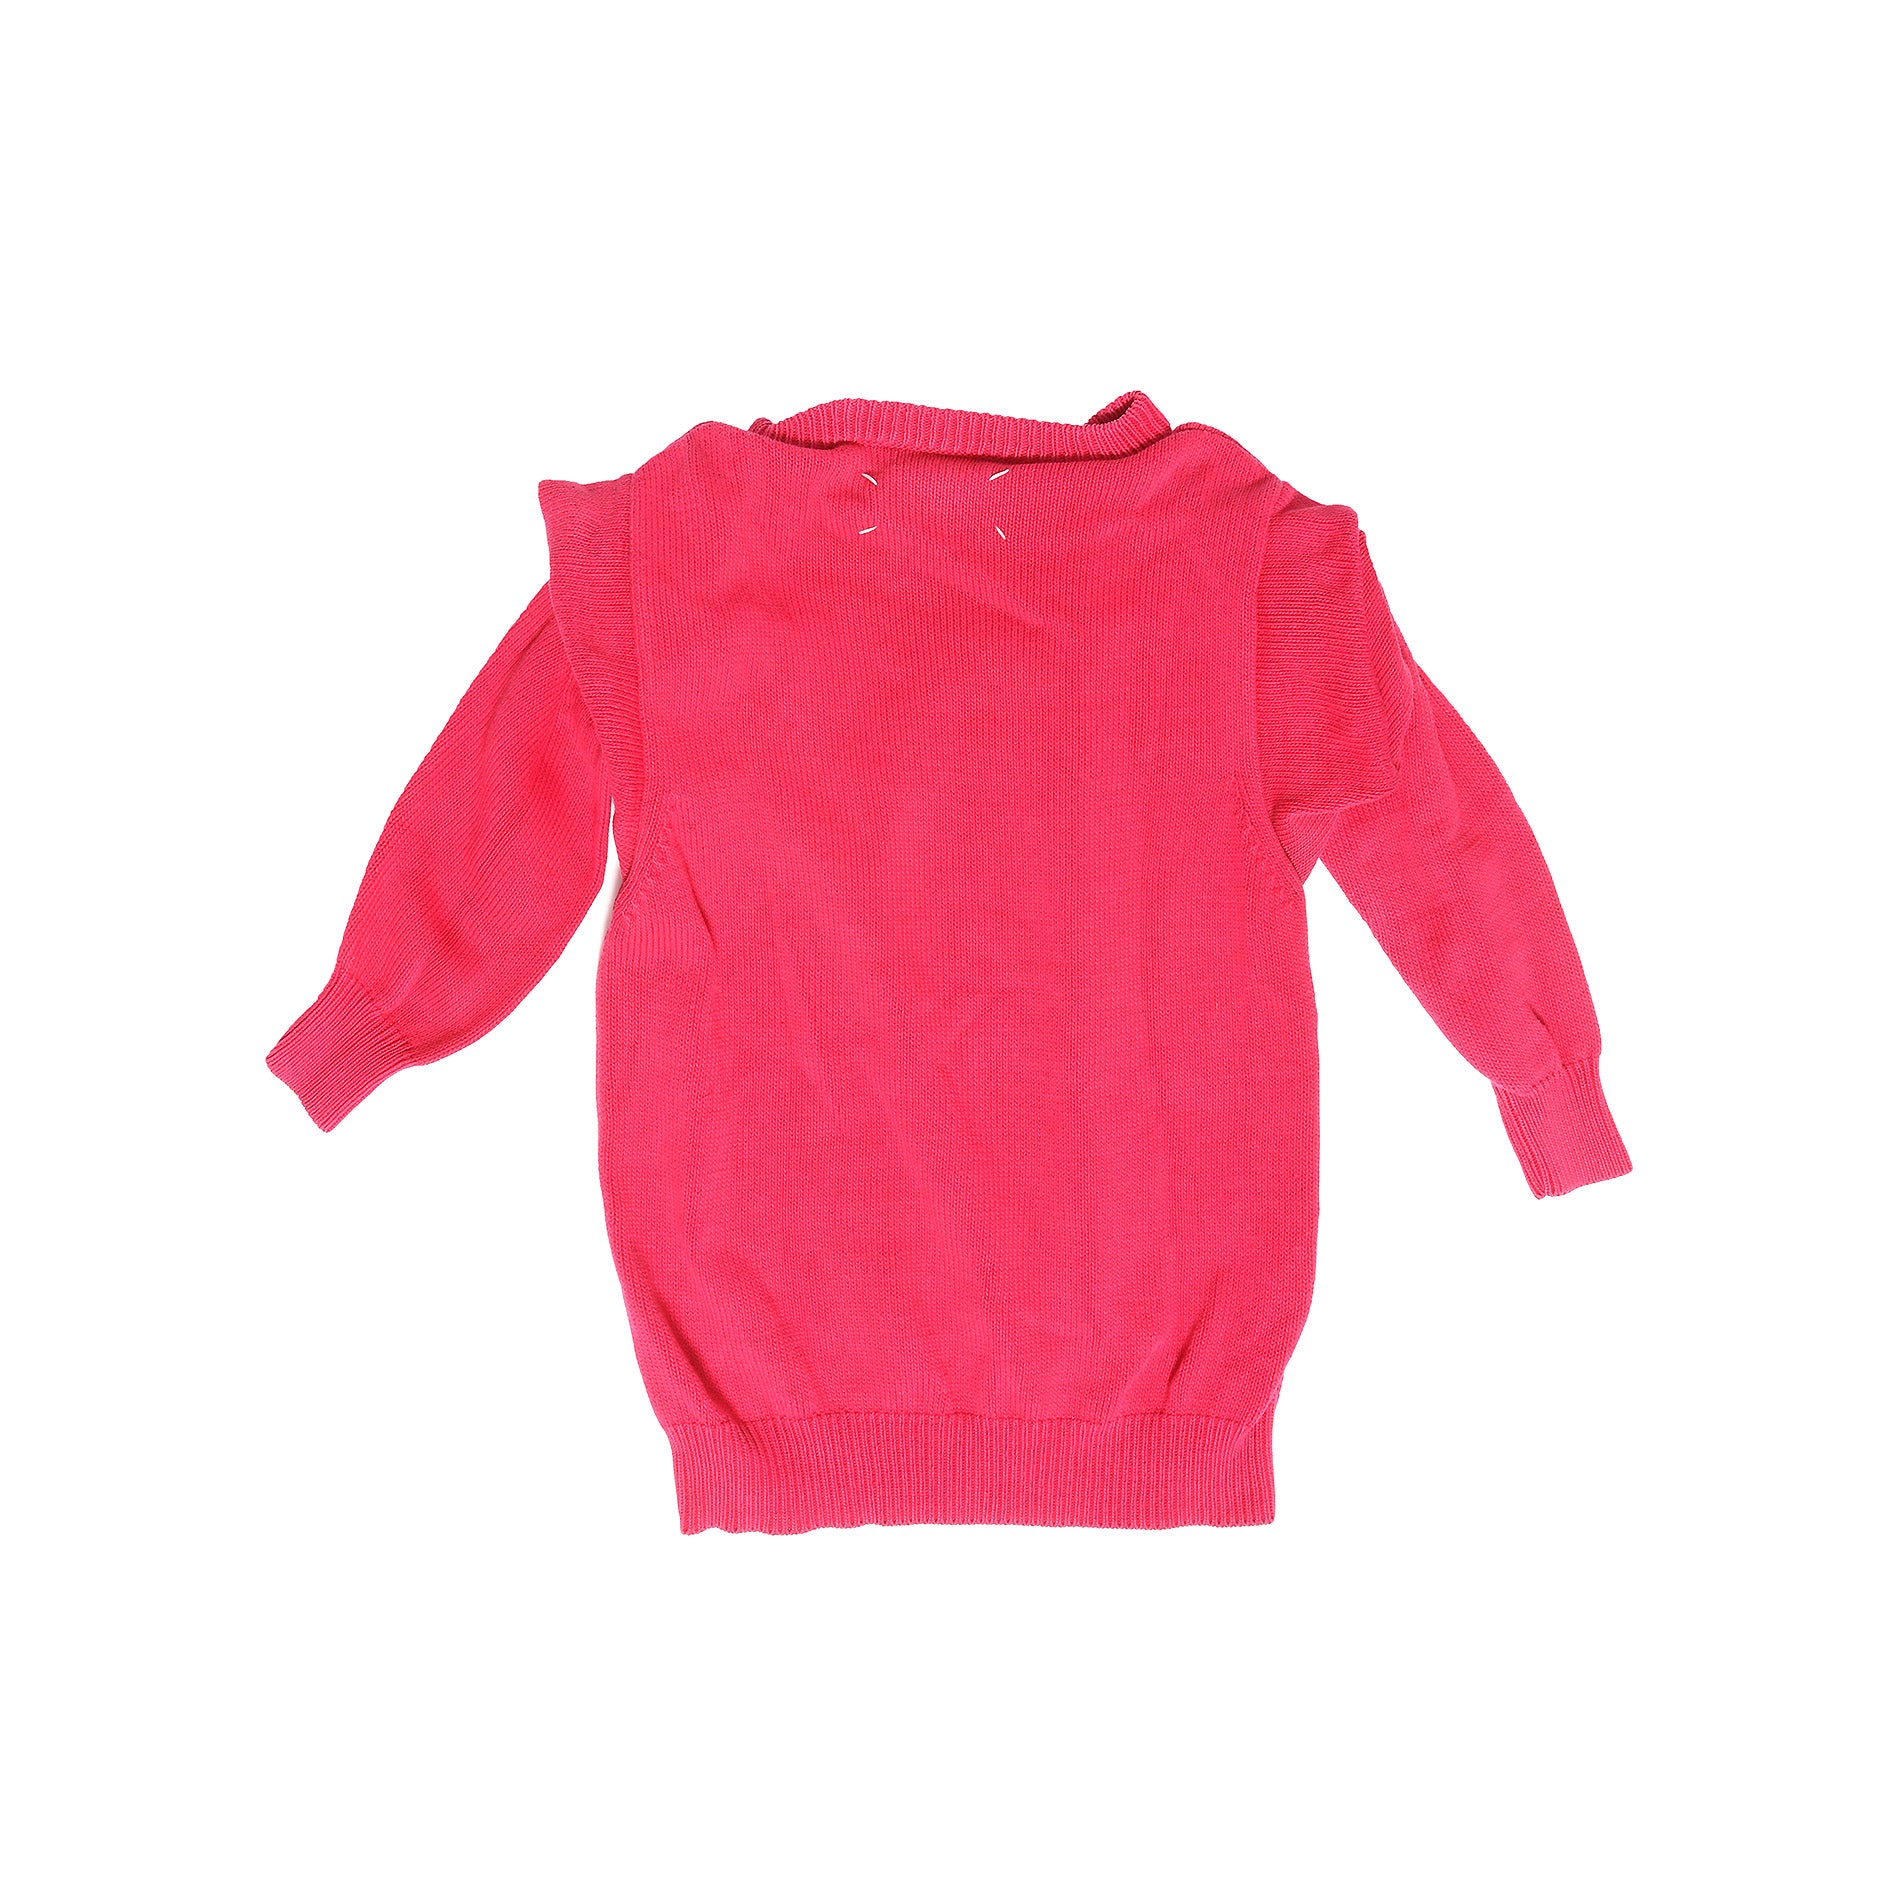 Maison Martin Margiela FW95 Hot Pink Fake Sleeve Sweater